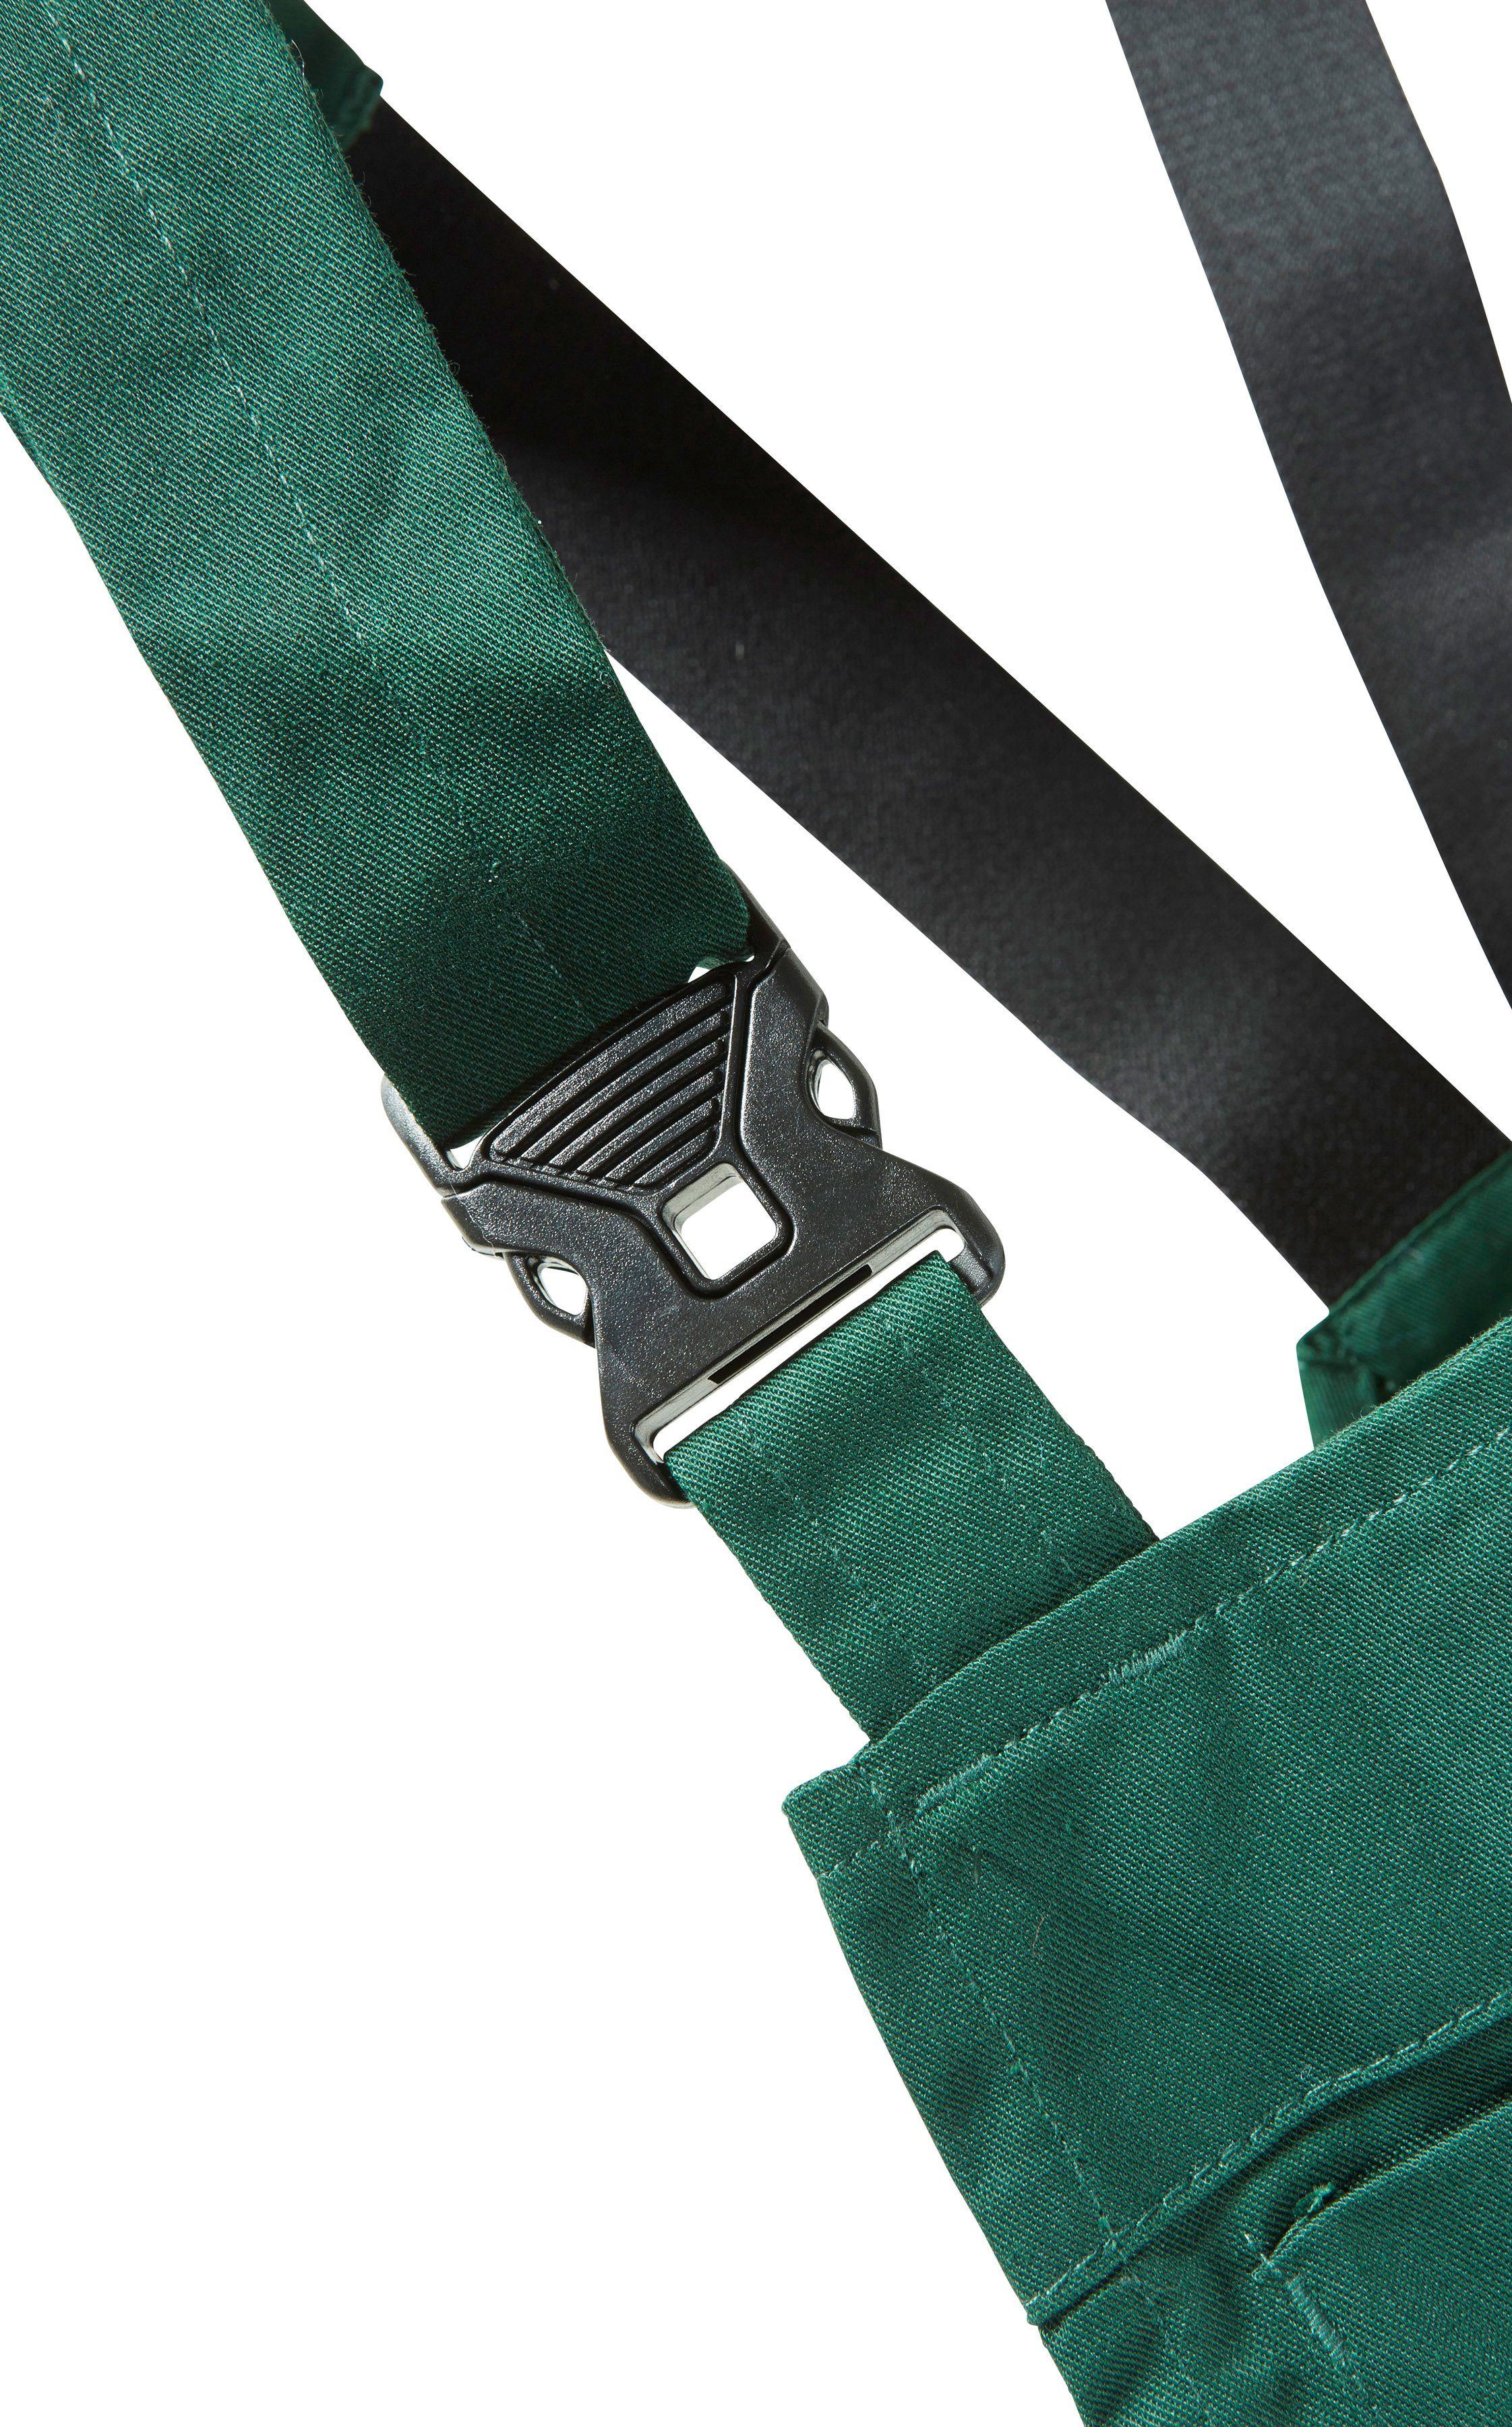 safety& more Latzhose Pull grün-schwarz Reflexeinsätzen mit